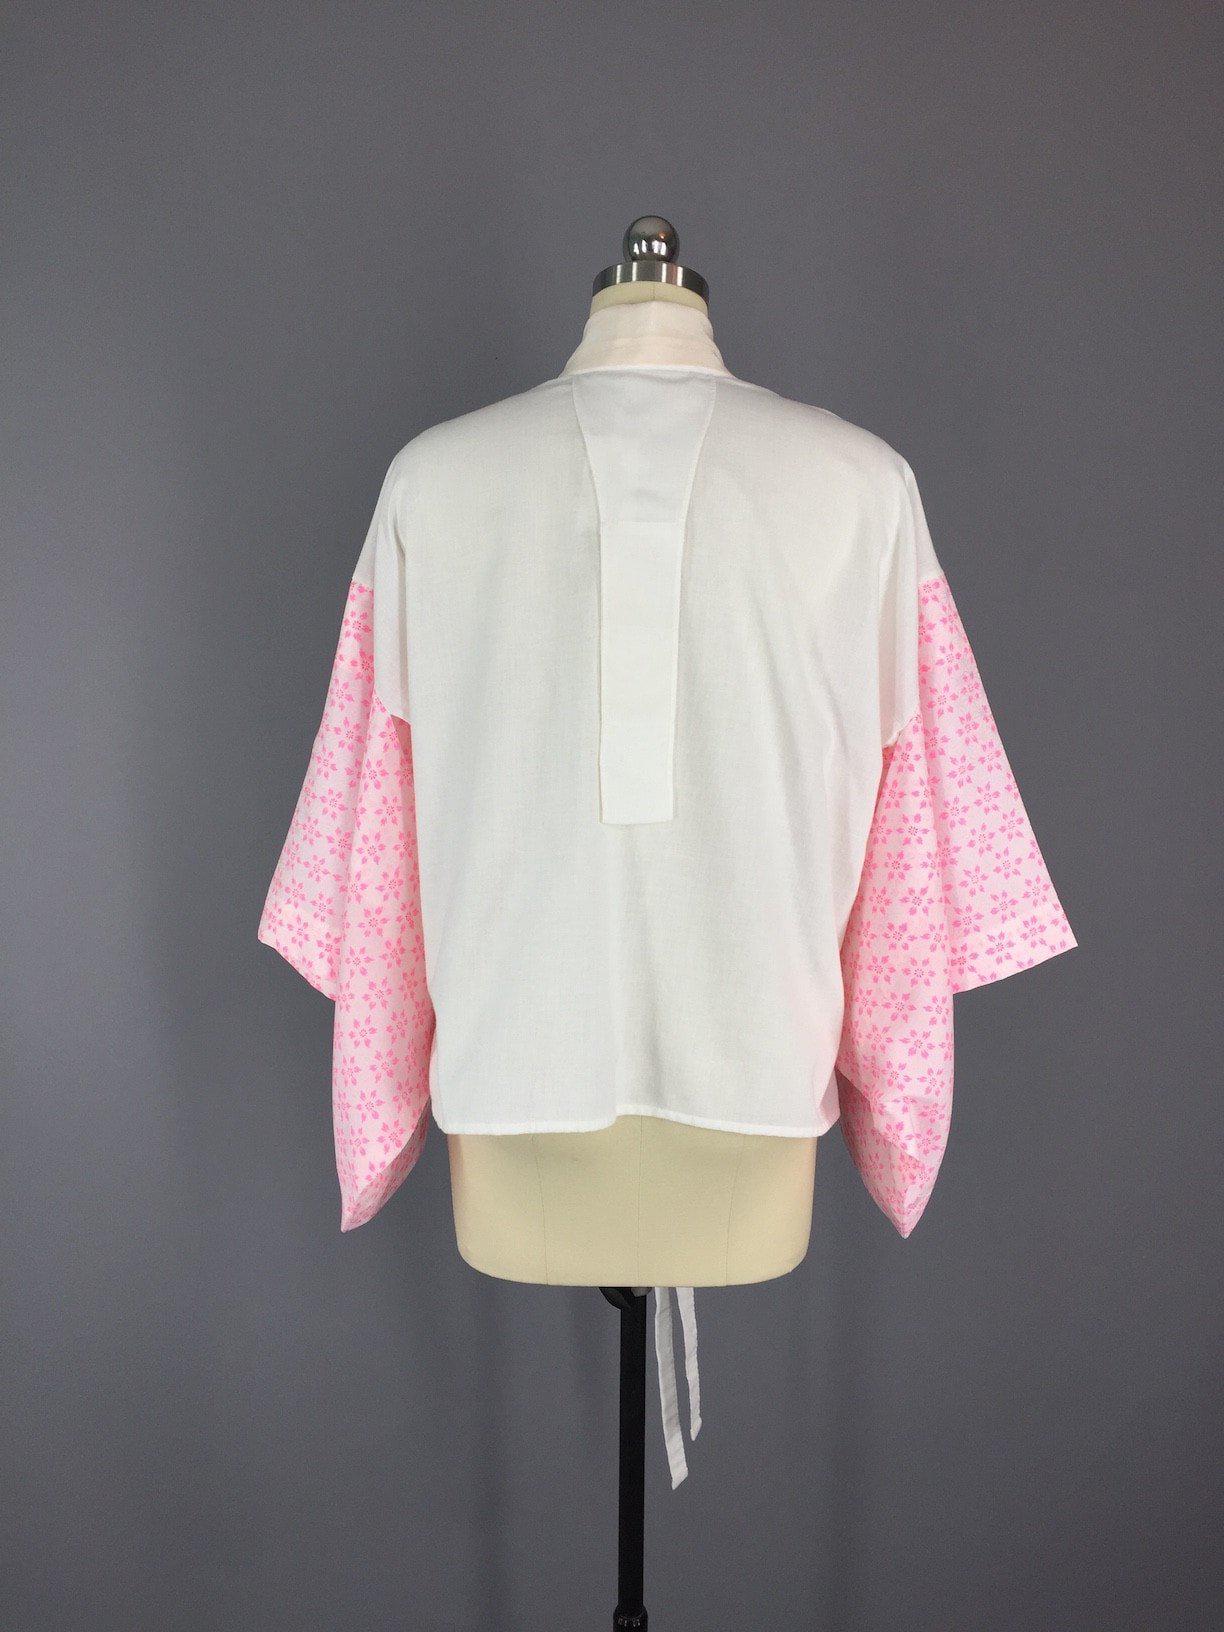 1980s Vintage Cotton Haori Kimono Jacket - ThisBlueBird